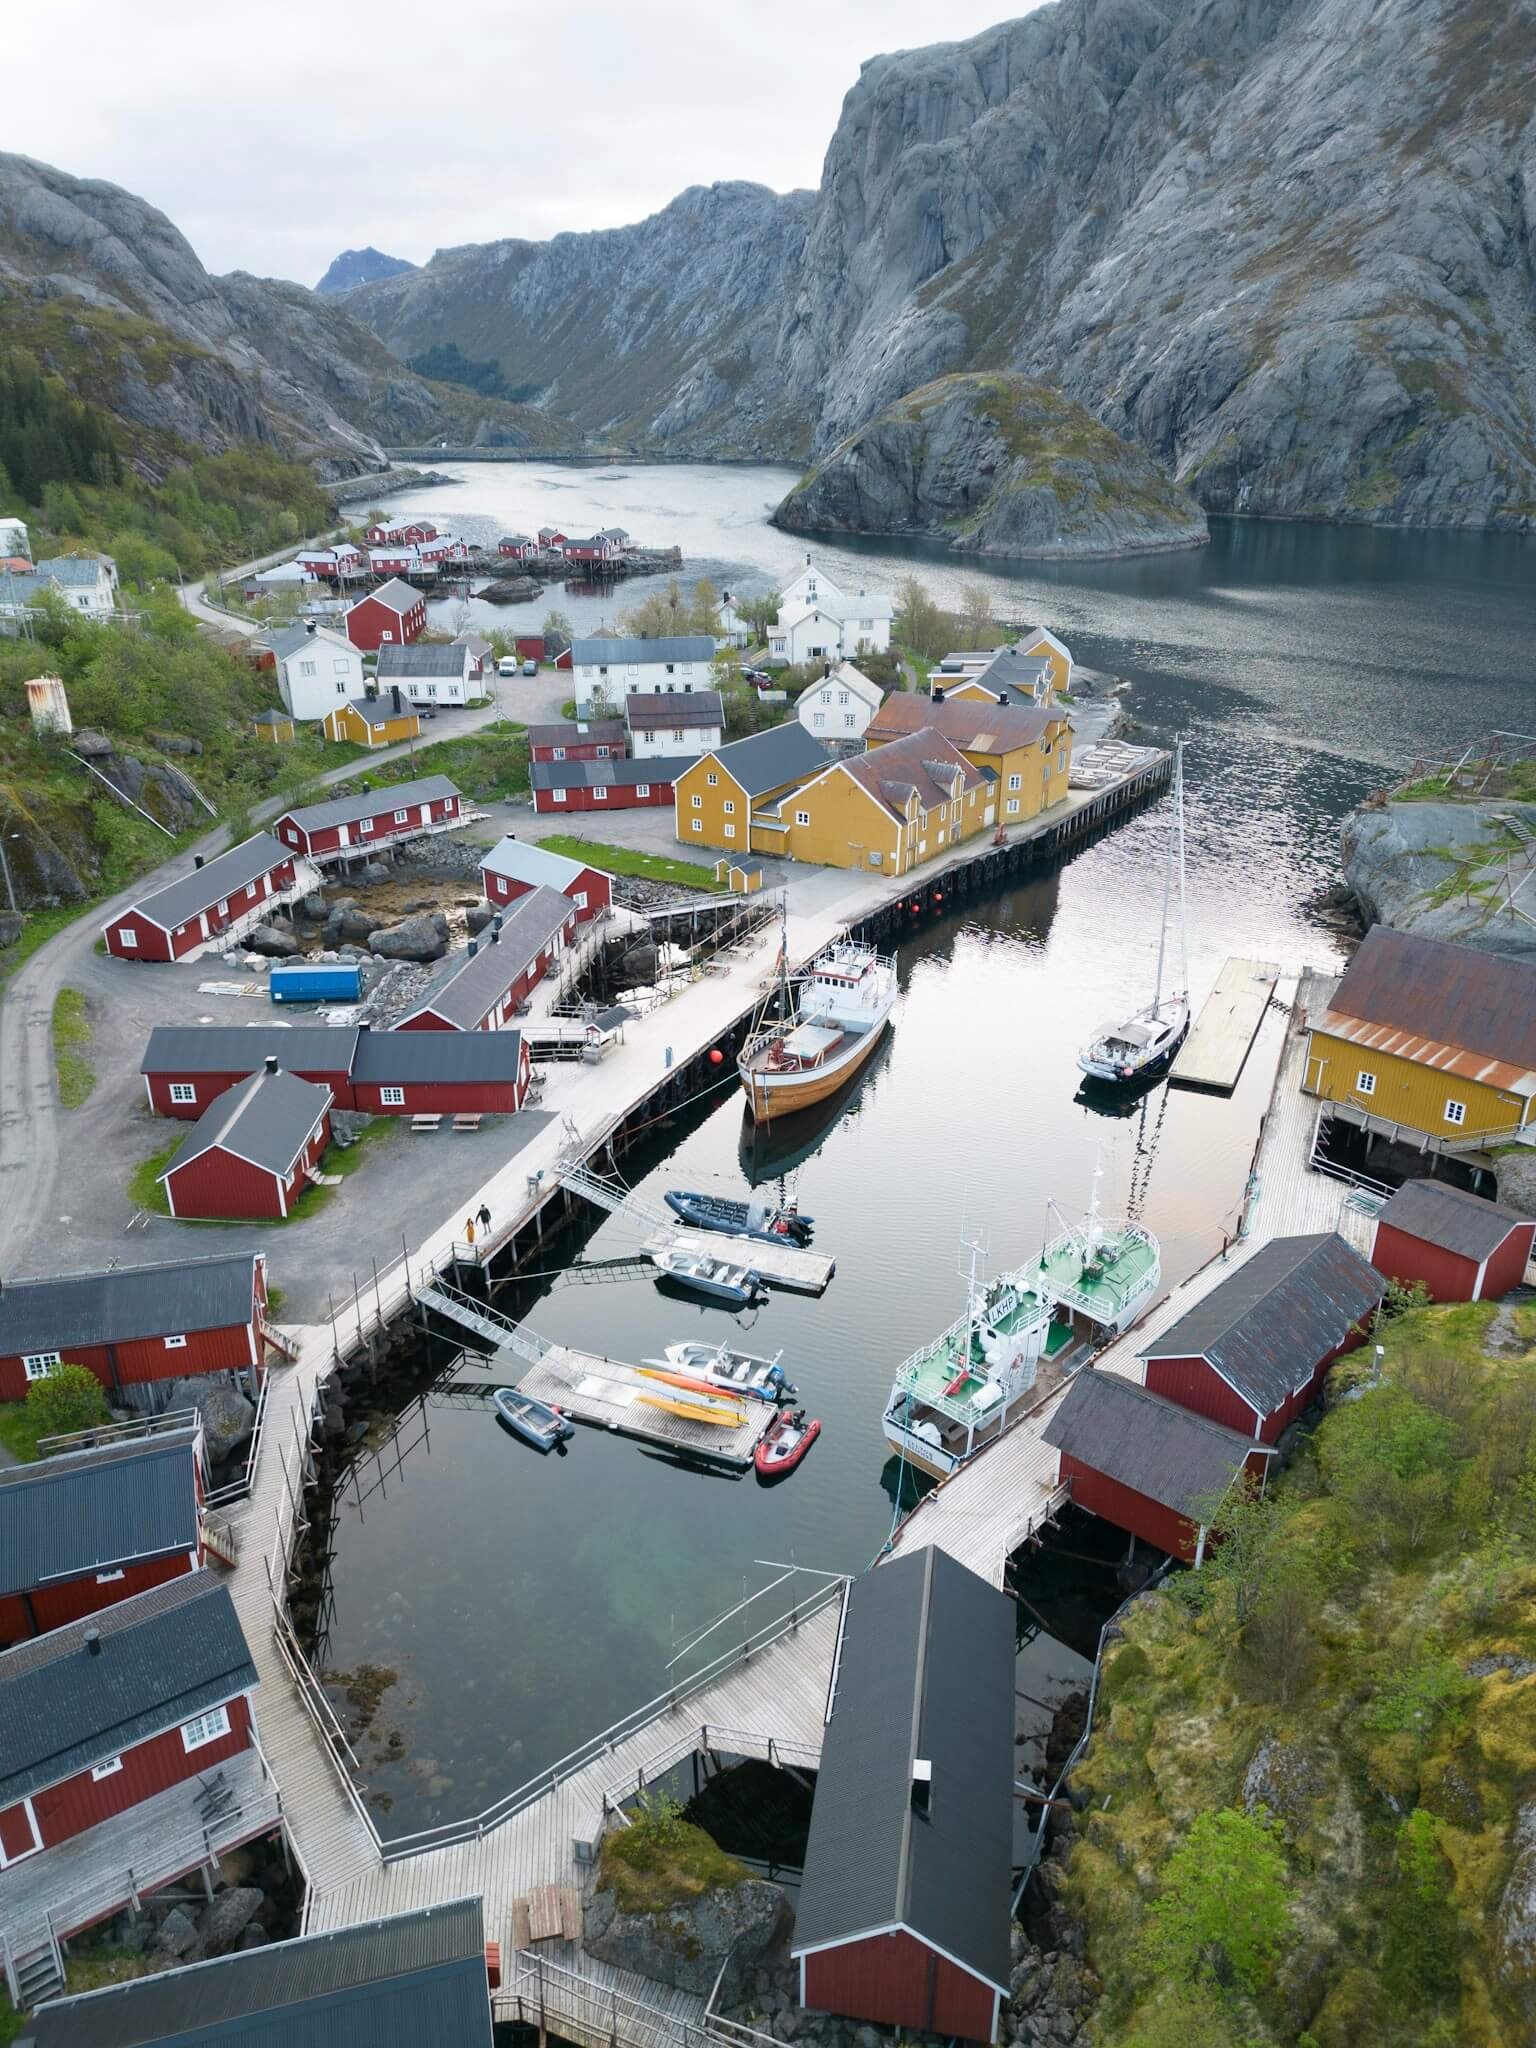 Nusfjord, Lofoten Islands in Norway